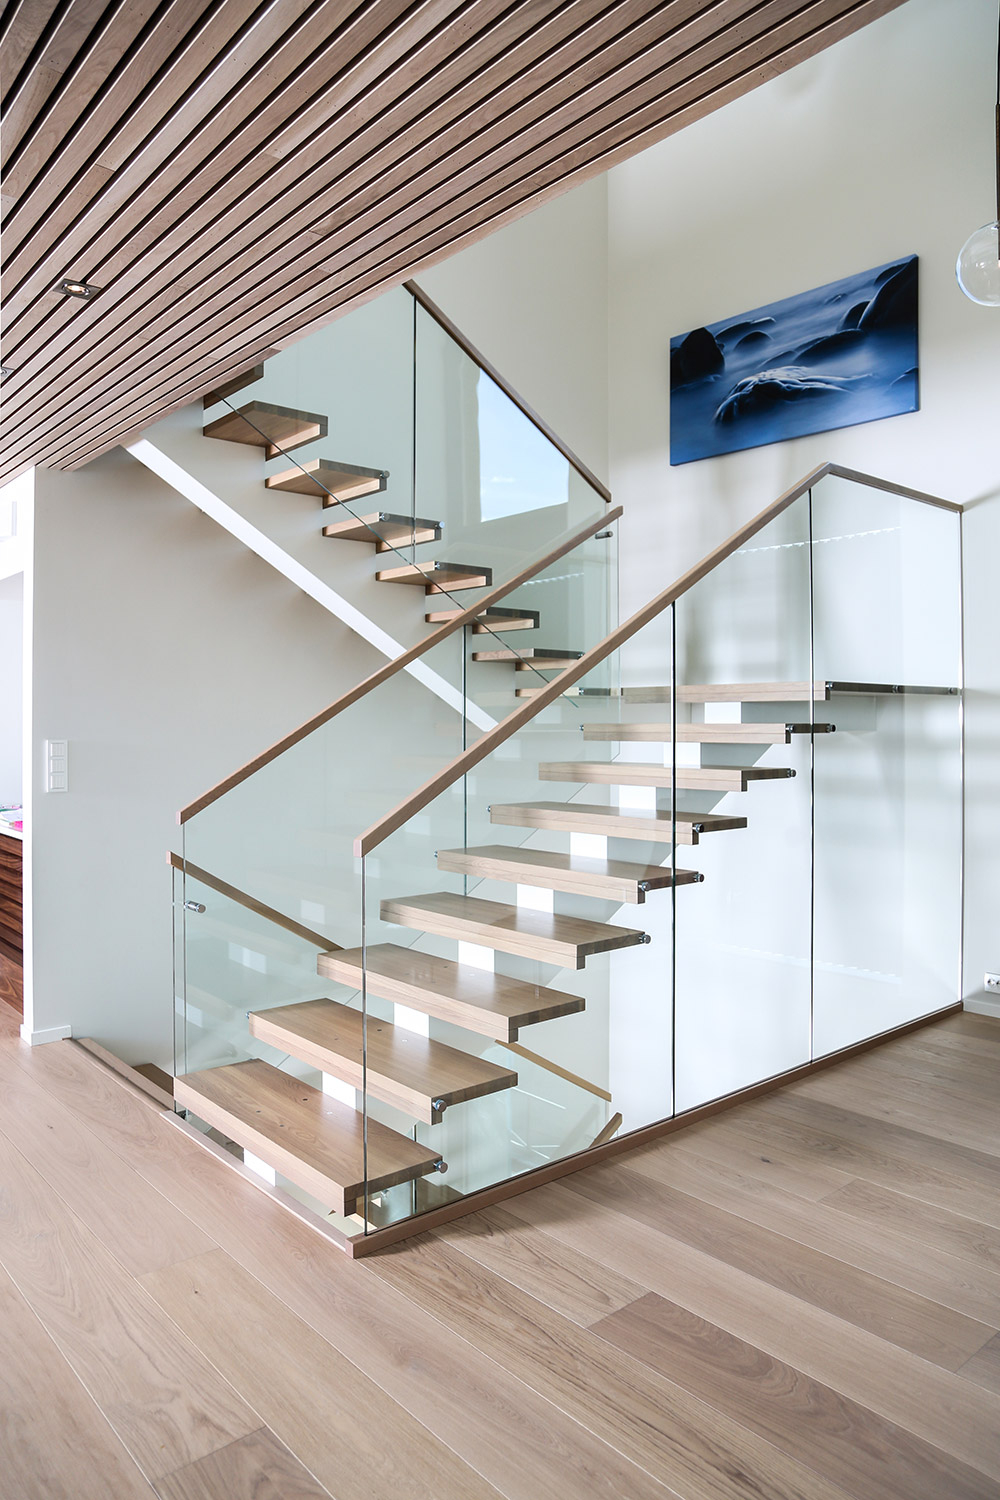 Treppen  Bautischlerei &amp; Montage  Unsere Referenzen  Bögelsack verwandt mit Moderne Treppen Ideen